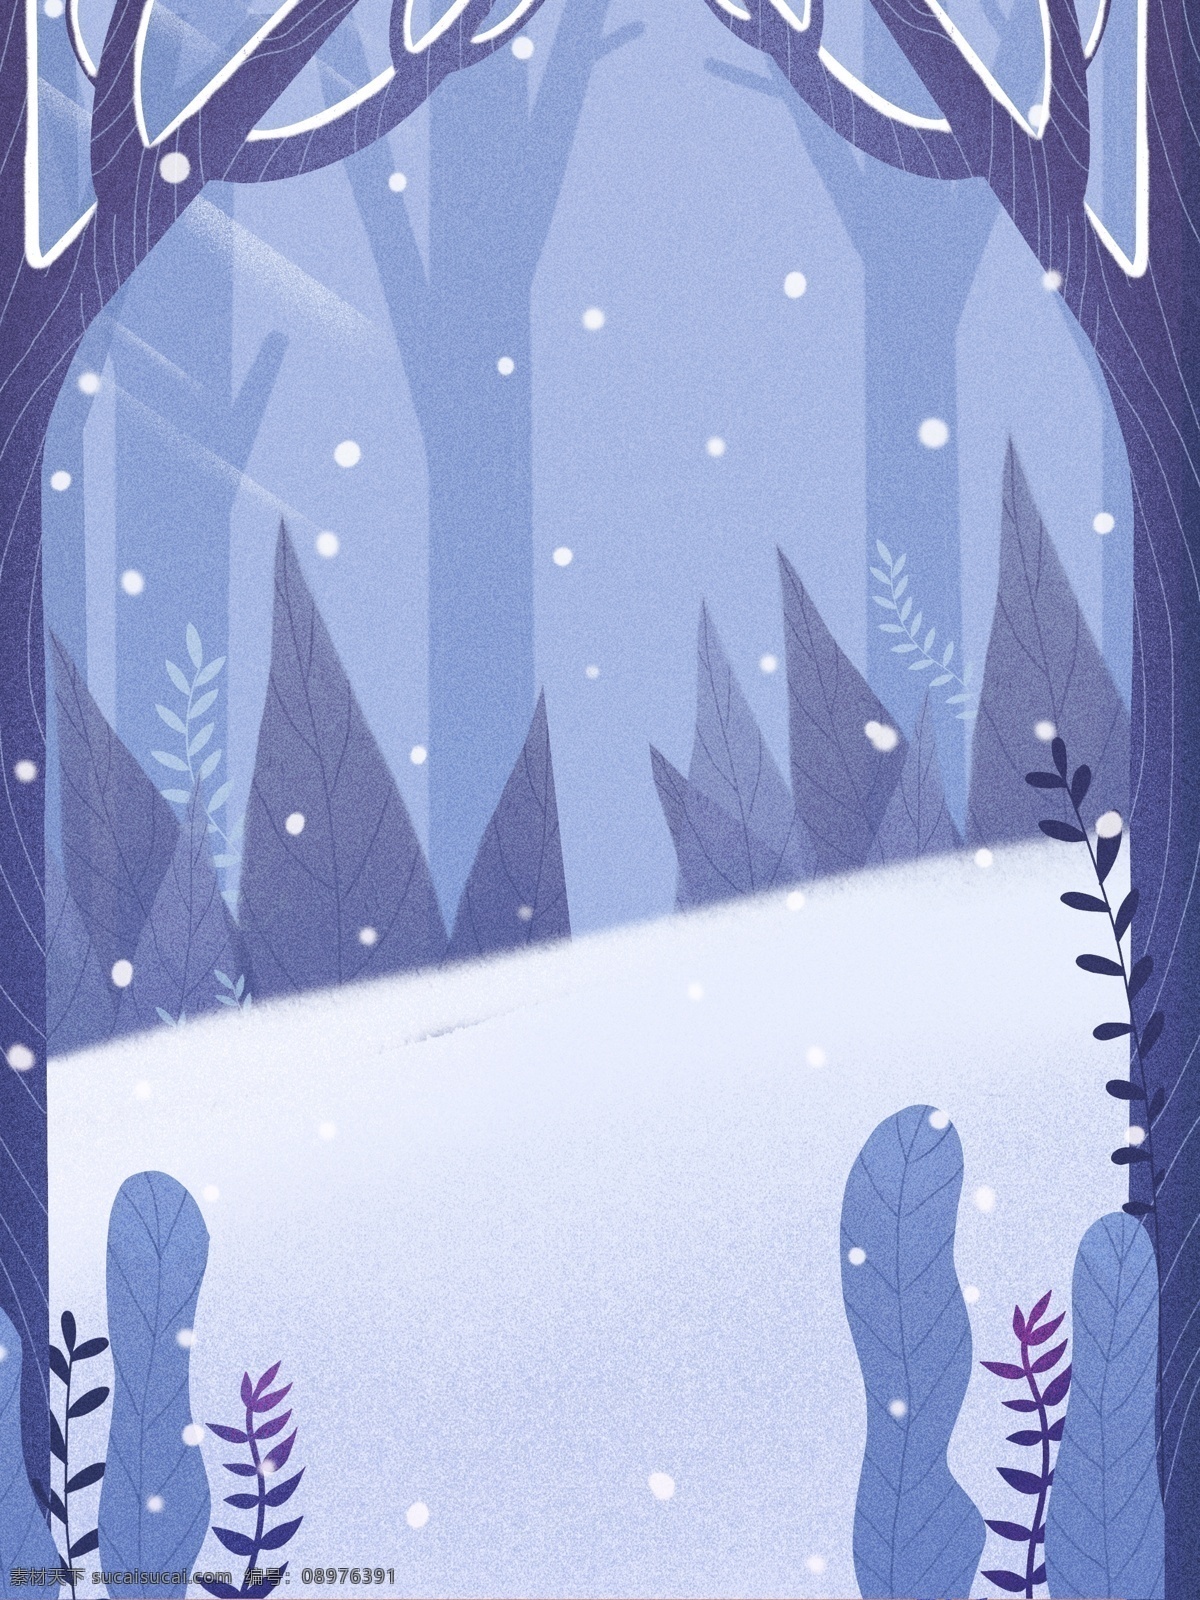 唯美 新年 雪地 树木 背景 蓝色 暴雪 可爱 小雪 大雪节气 小雪背景 传统节气 小雪节气